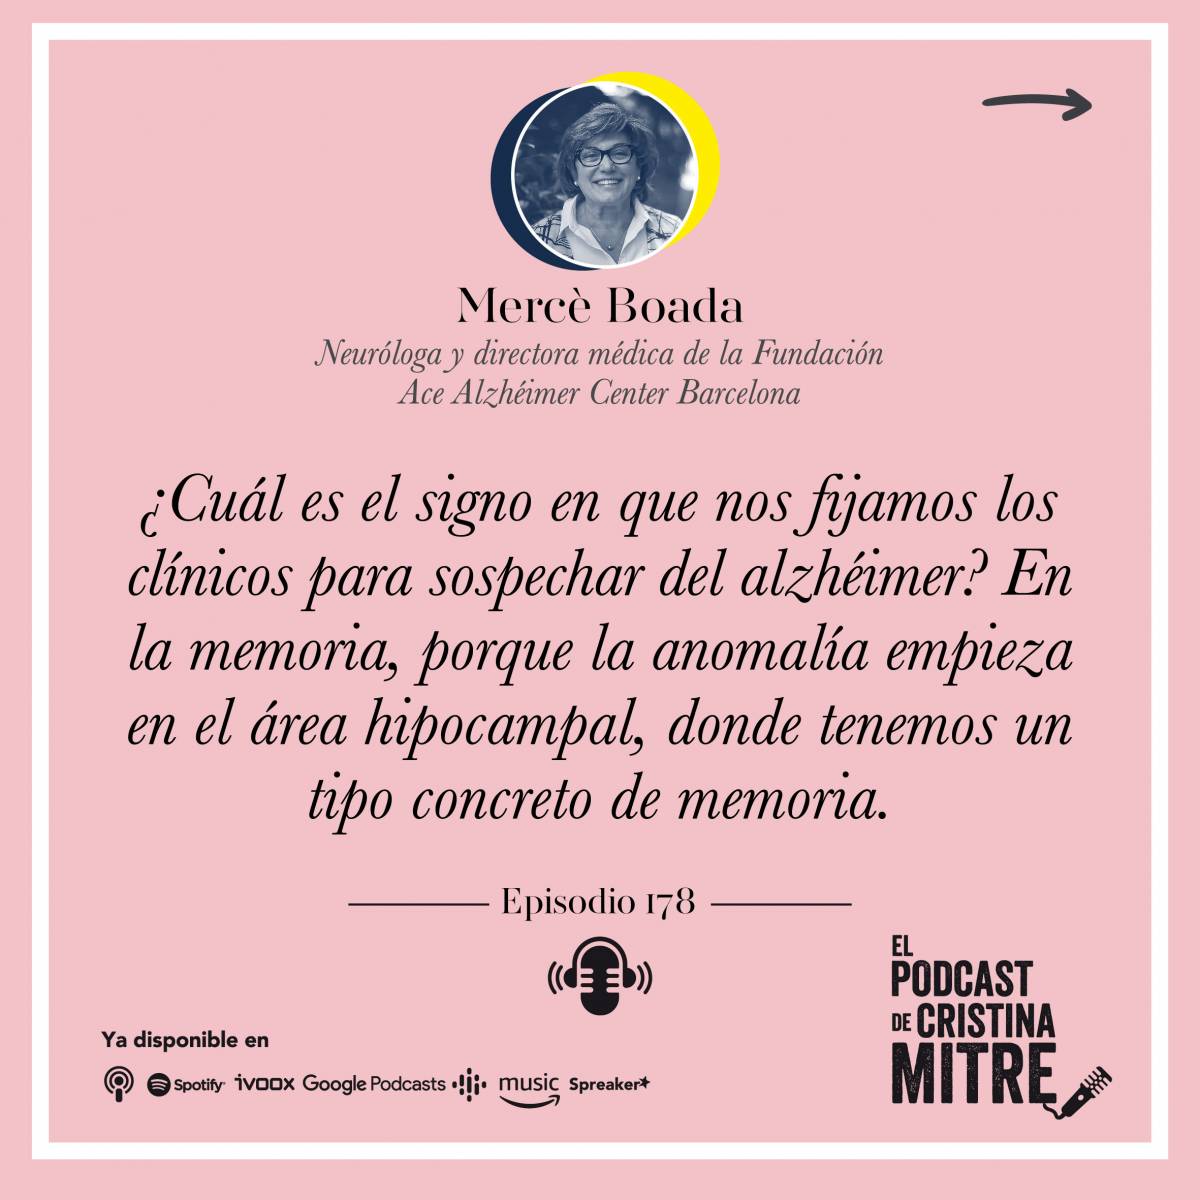 el podcast de cristina Mitre Mercé Boada Alzheimer memoria